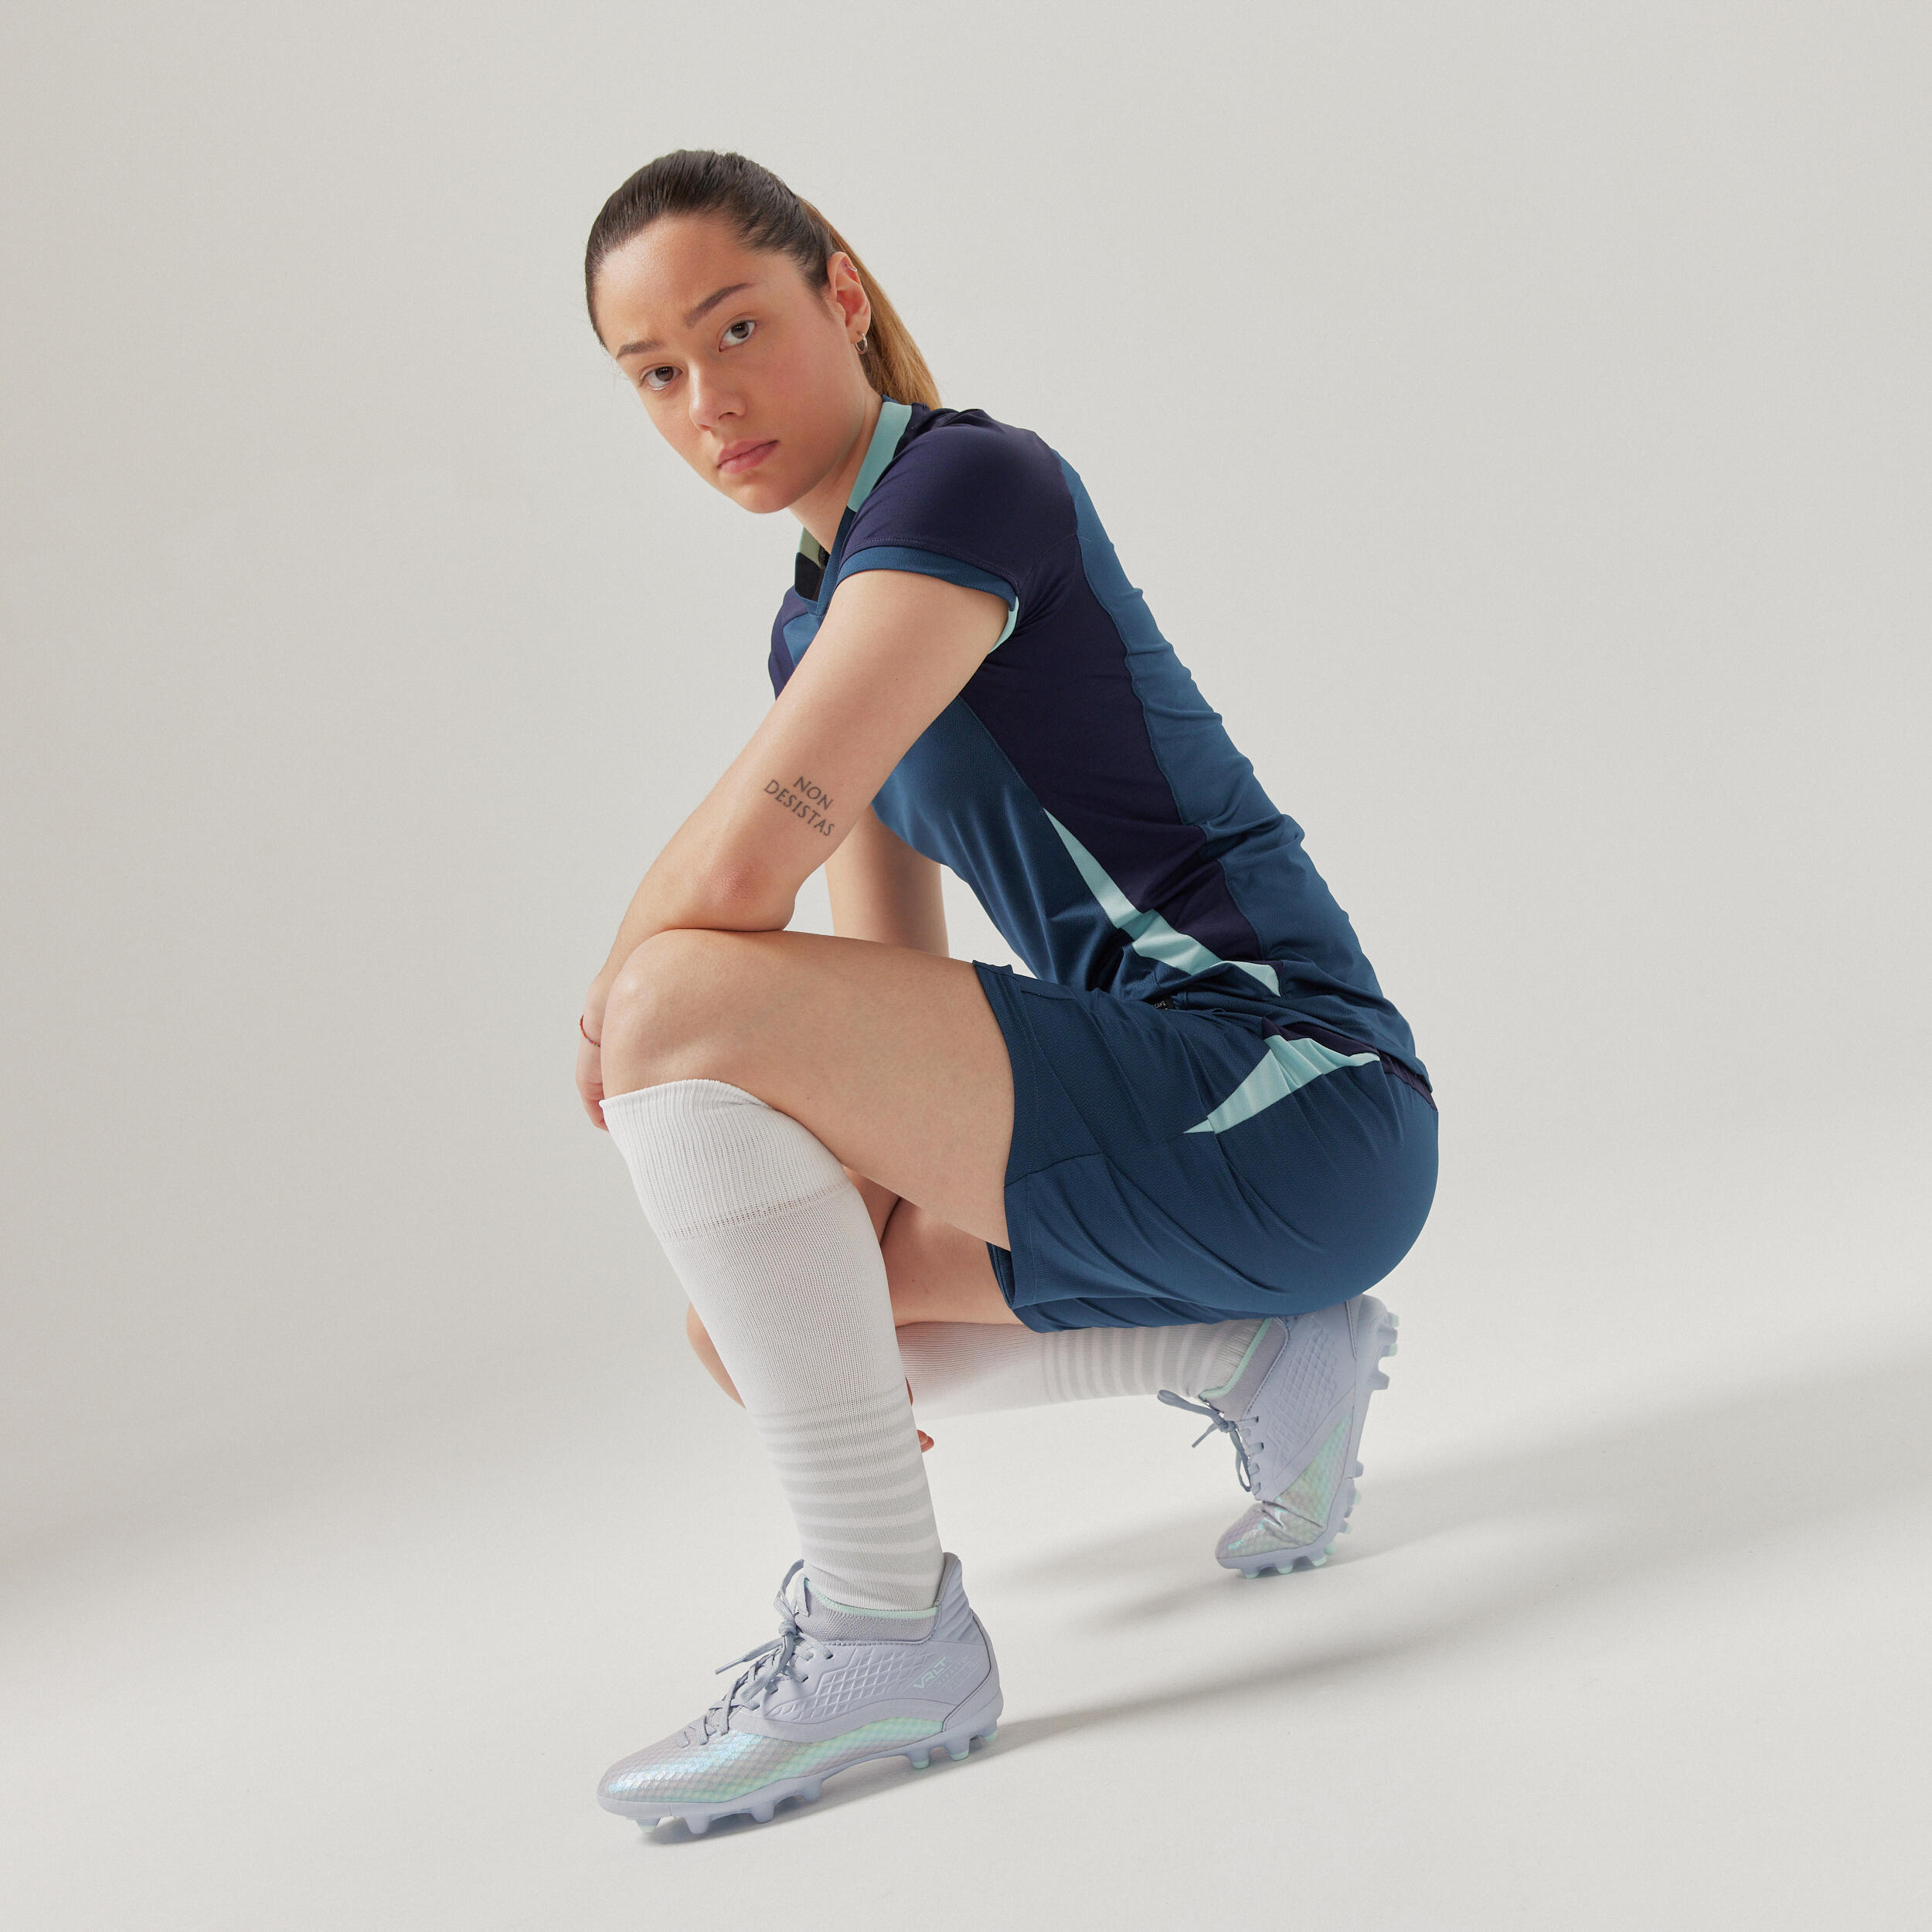 Women's Football Shorts - Blue 3/4